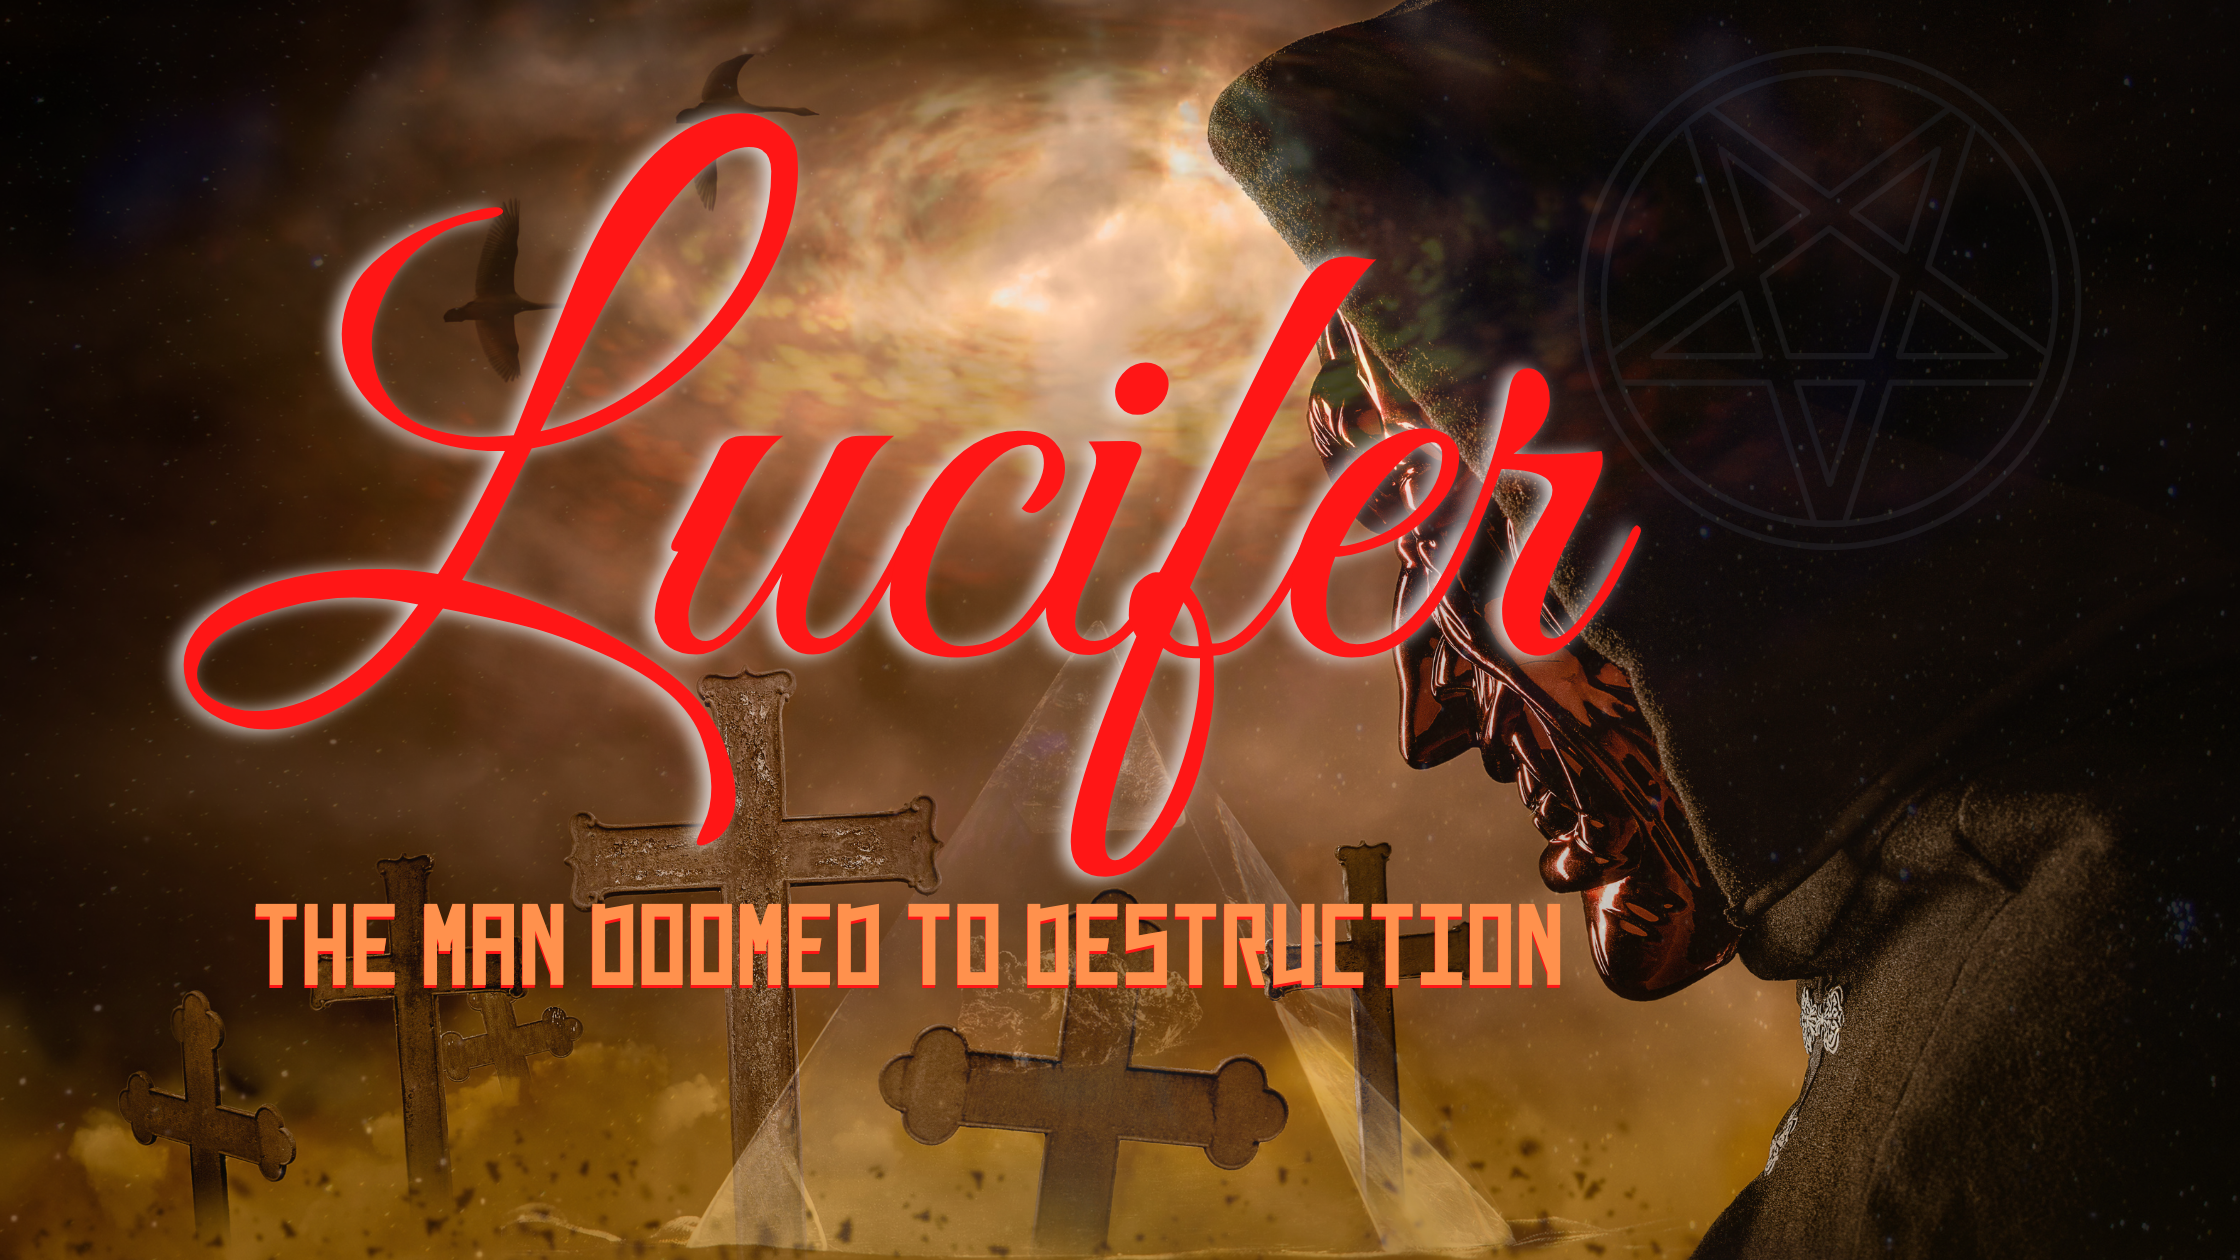 Lucifer son of destruction